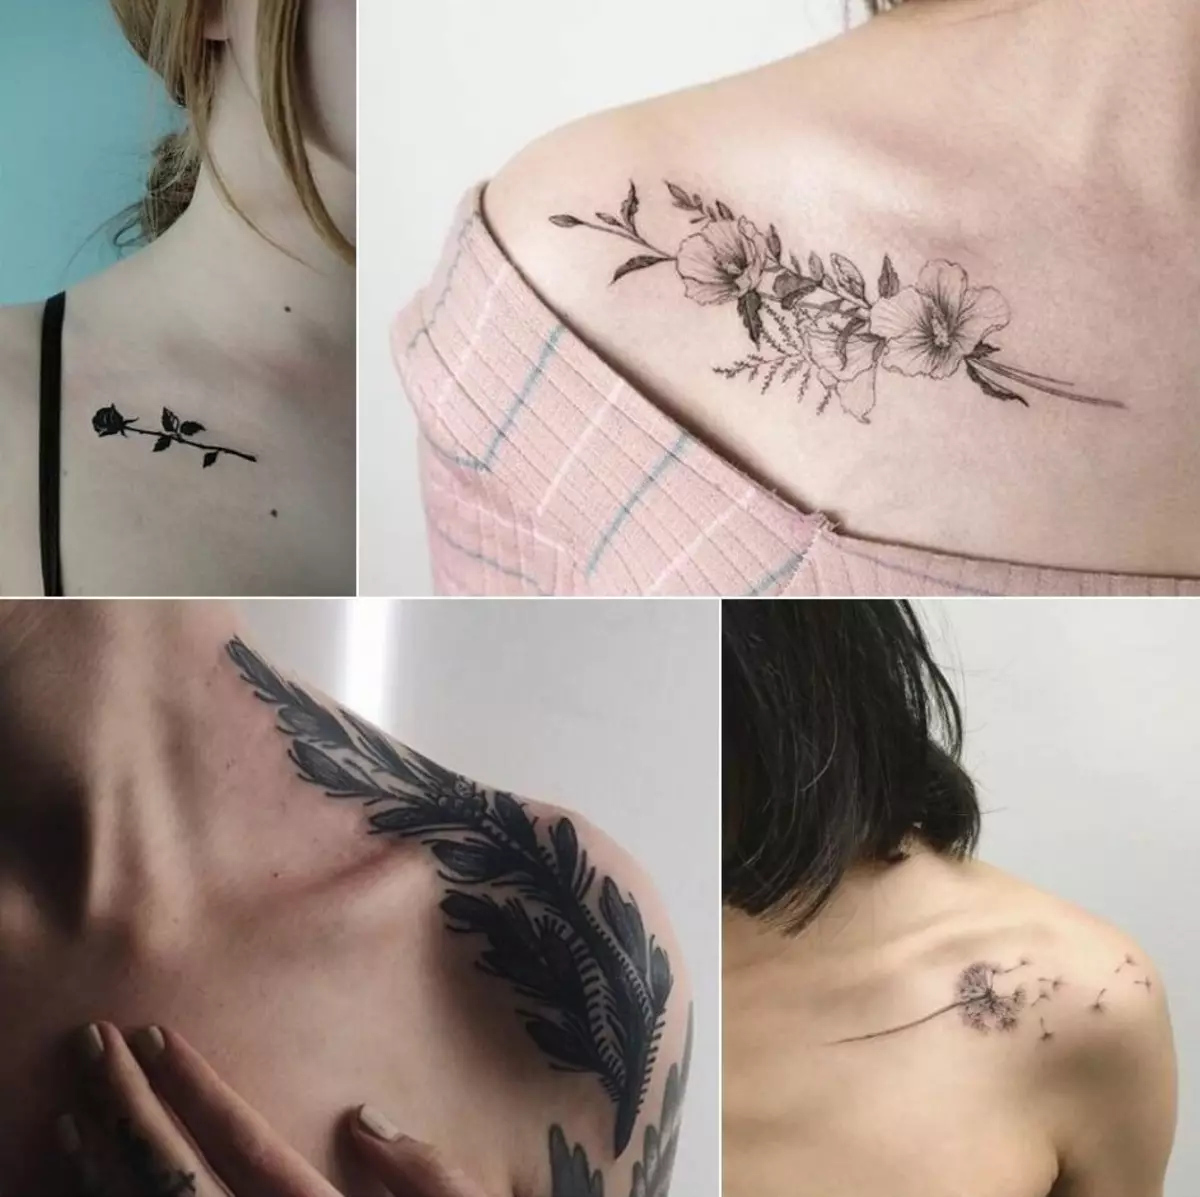 Tatuazh i bukur për vajzat (80 foto): Skica e tatuazheve më elegante femërore në të gjitha pjesët e trupit dhe shembuj të tjerë elegant të tatuazheve me vizatime dhe mbishkrime 13775_73